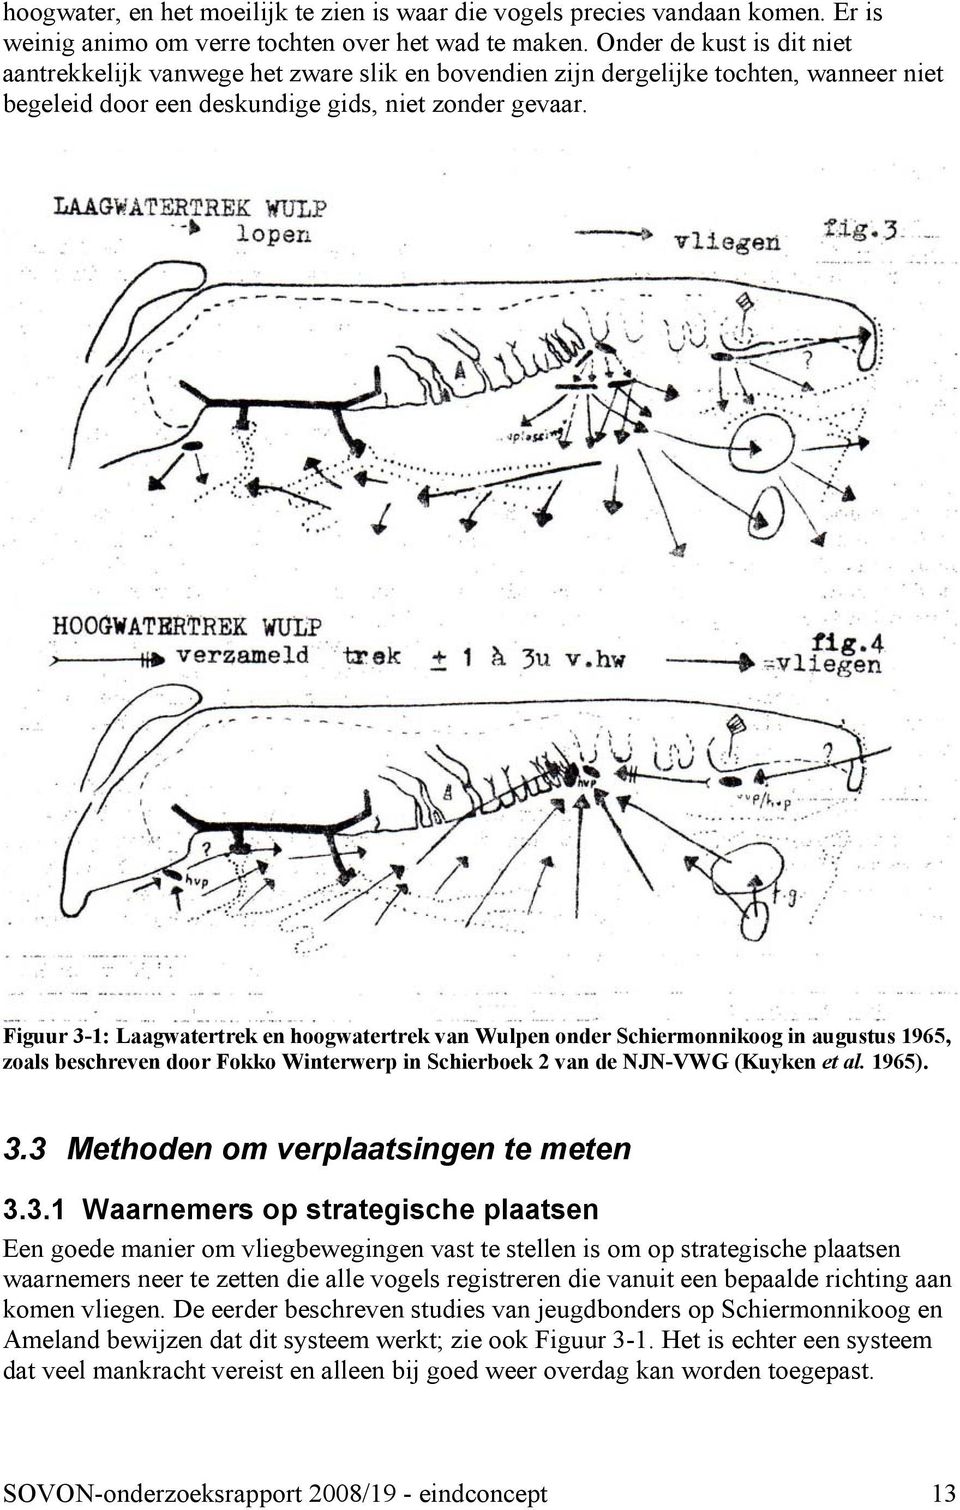 Figuur 3-1: Laagwatertrek en hoogwatertrek van Wulpen onder Schiermonnikoog in augustus 1965, zoals beschreven door Fokko Winterwerp in Schierboek 2 van de NJN-VWG (Kuyken et al. 1965). 3.3 Methoden om verplaatsingen te meten 3.